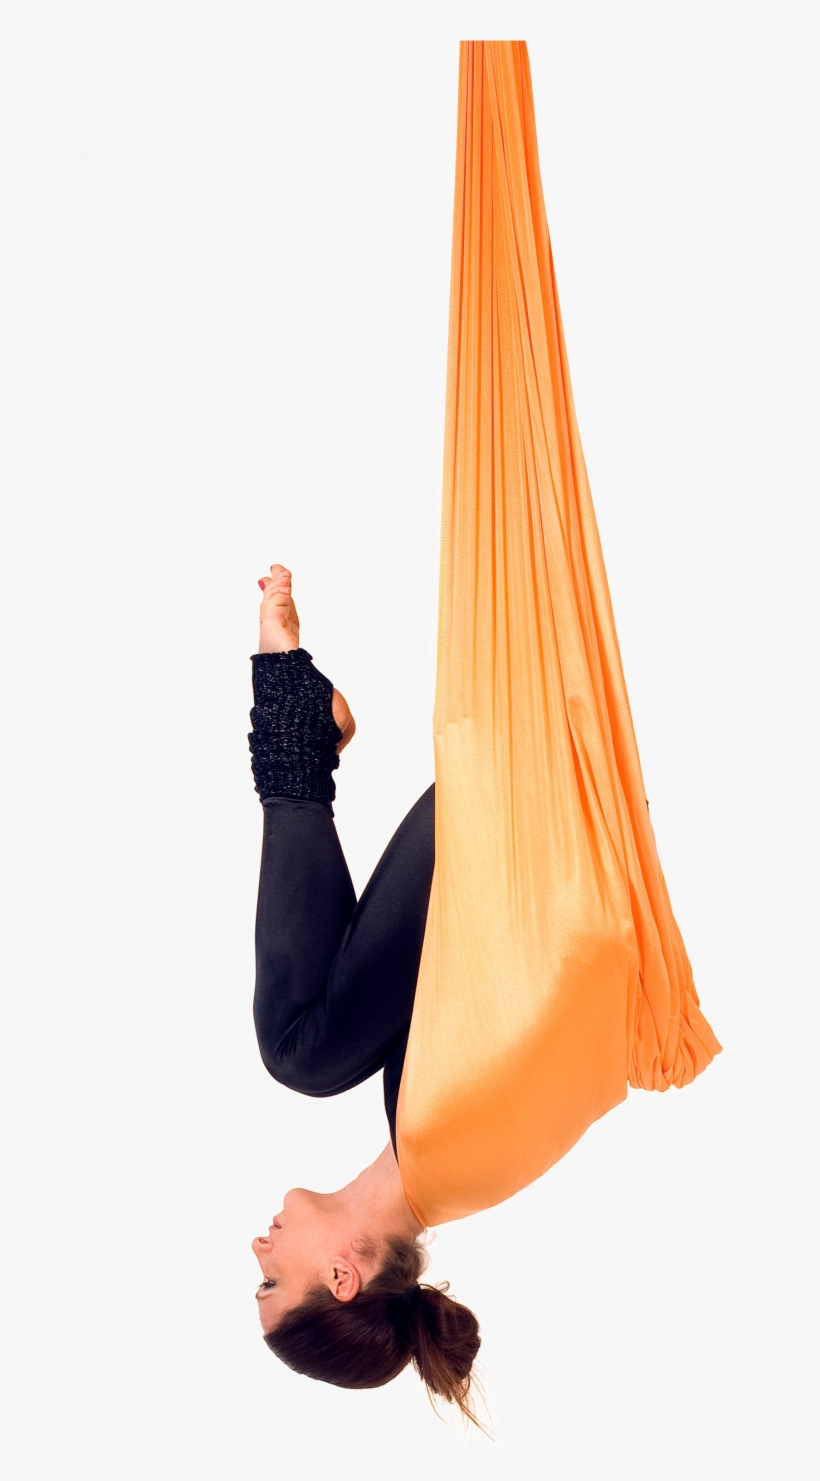 Aerial Yoga Pose Png Transparent File - Anti Gravity Yoga Bat Pose, transparent png #1019377